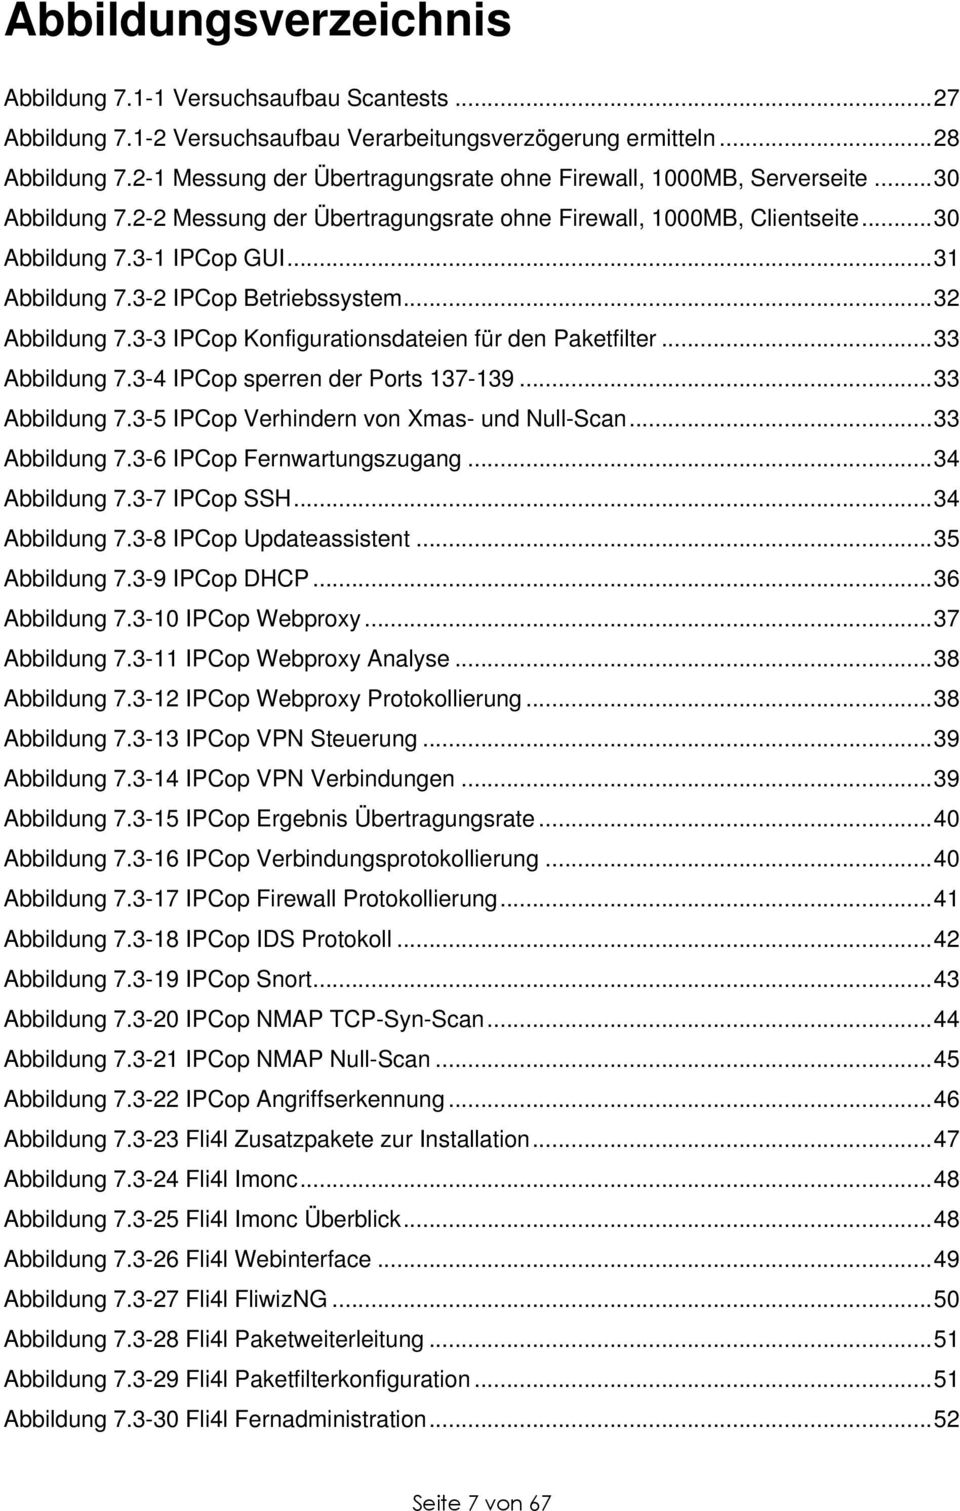 3-2 IPCop Betriebssystem...32 Abbildung 7.3-3 IPCop Konfigurationsdateien für den Paketfilter...33 Abbildung 7.3-4 IPCop sperren der Ports 137-139...33 Abbildung 7.3-5 IPCop Verhindern von Xmas- und Null-Scan.